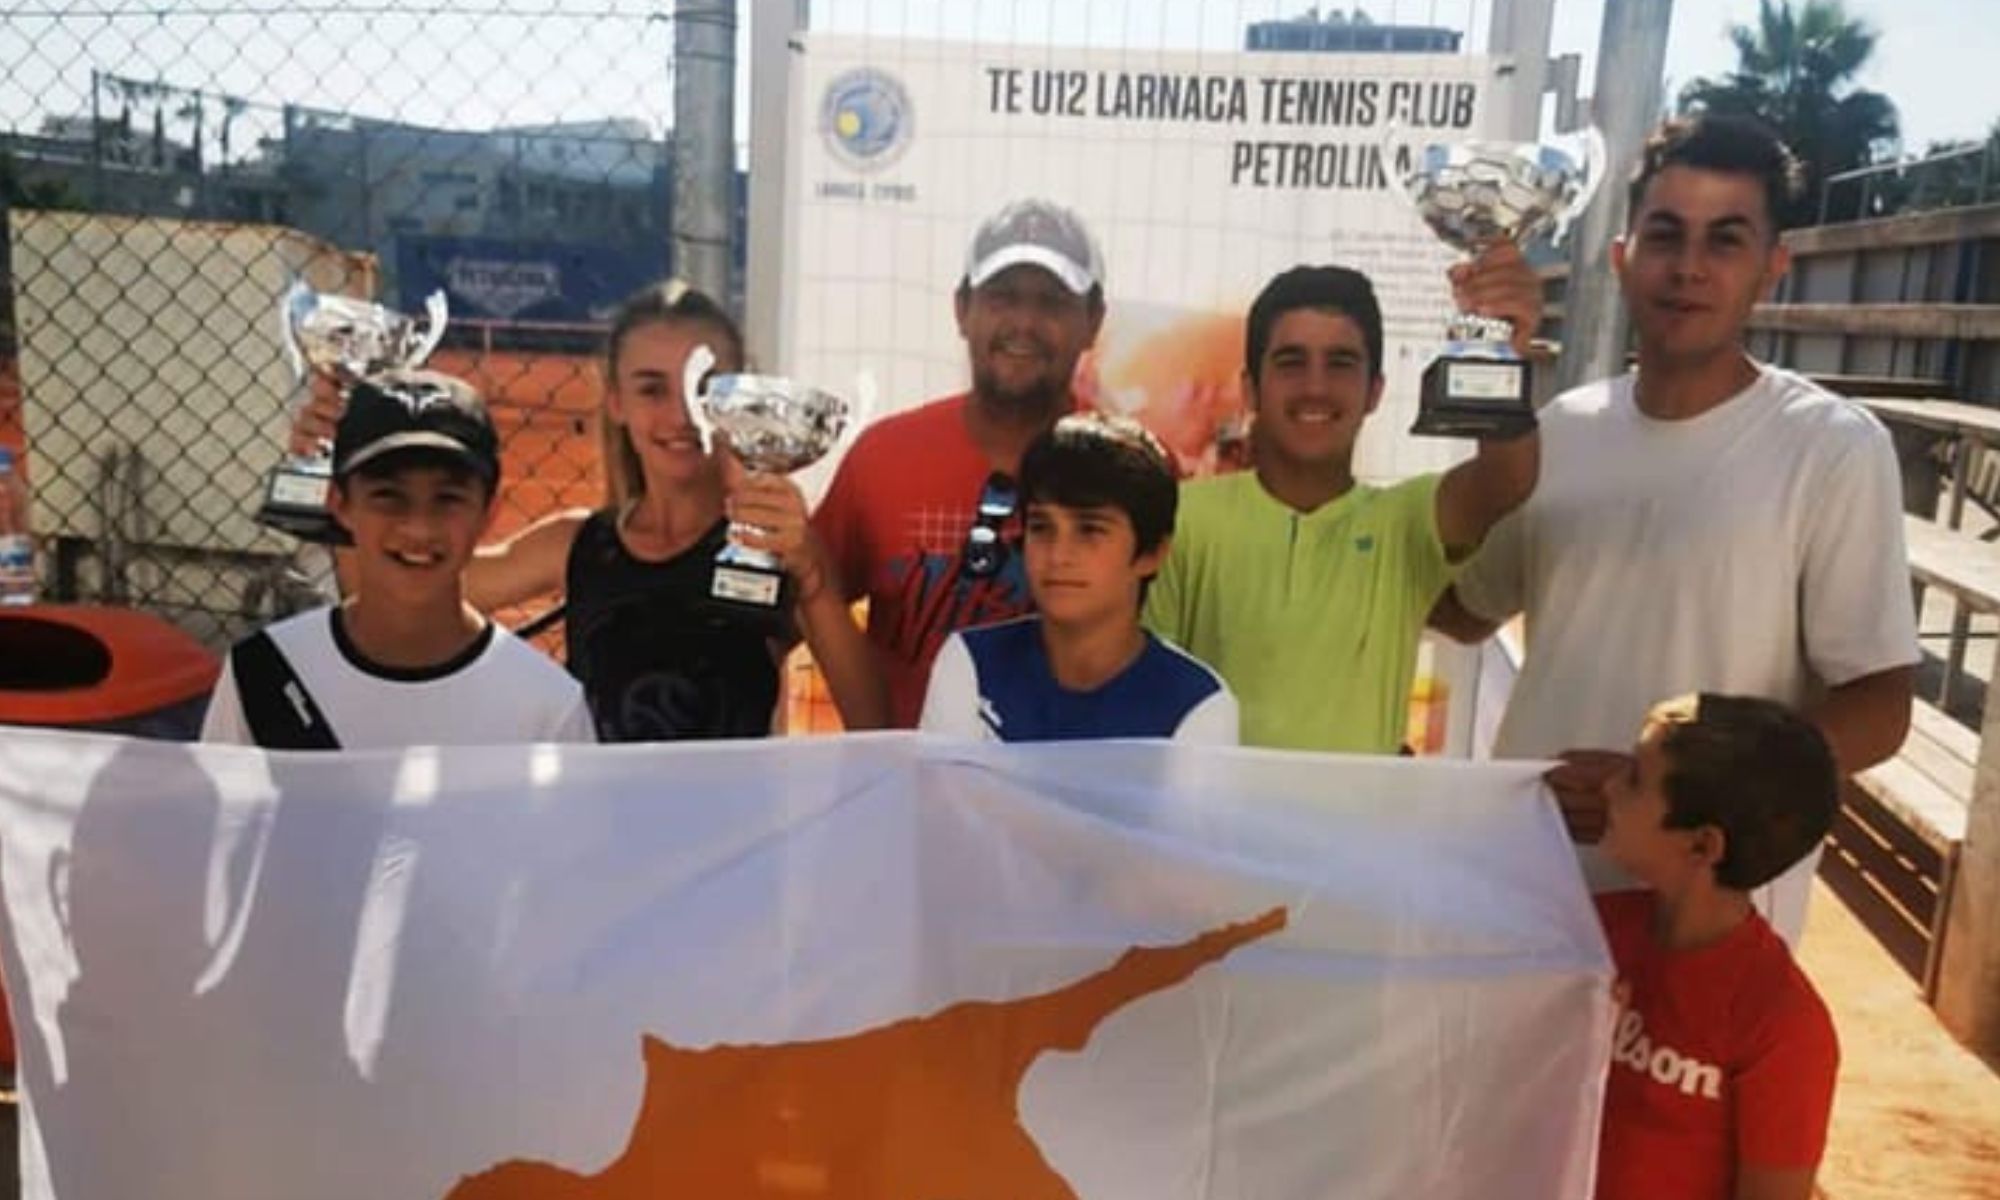 Λάρνακα: Επιτυχίες για τους αδερφούς Βραχίμη με καταγωγή από την Αμμόχωστο στο τουρνουά Tennis Europe